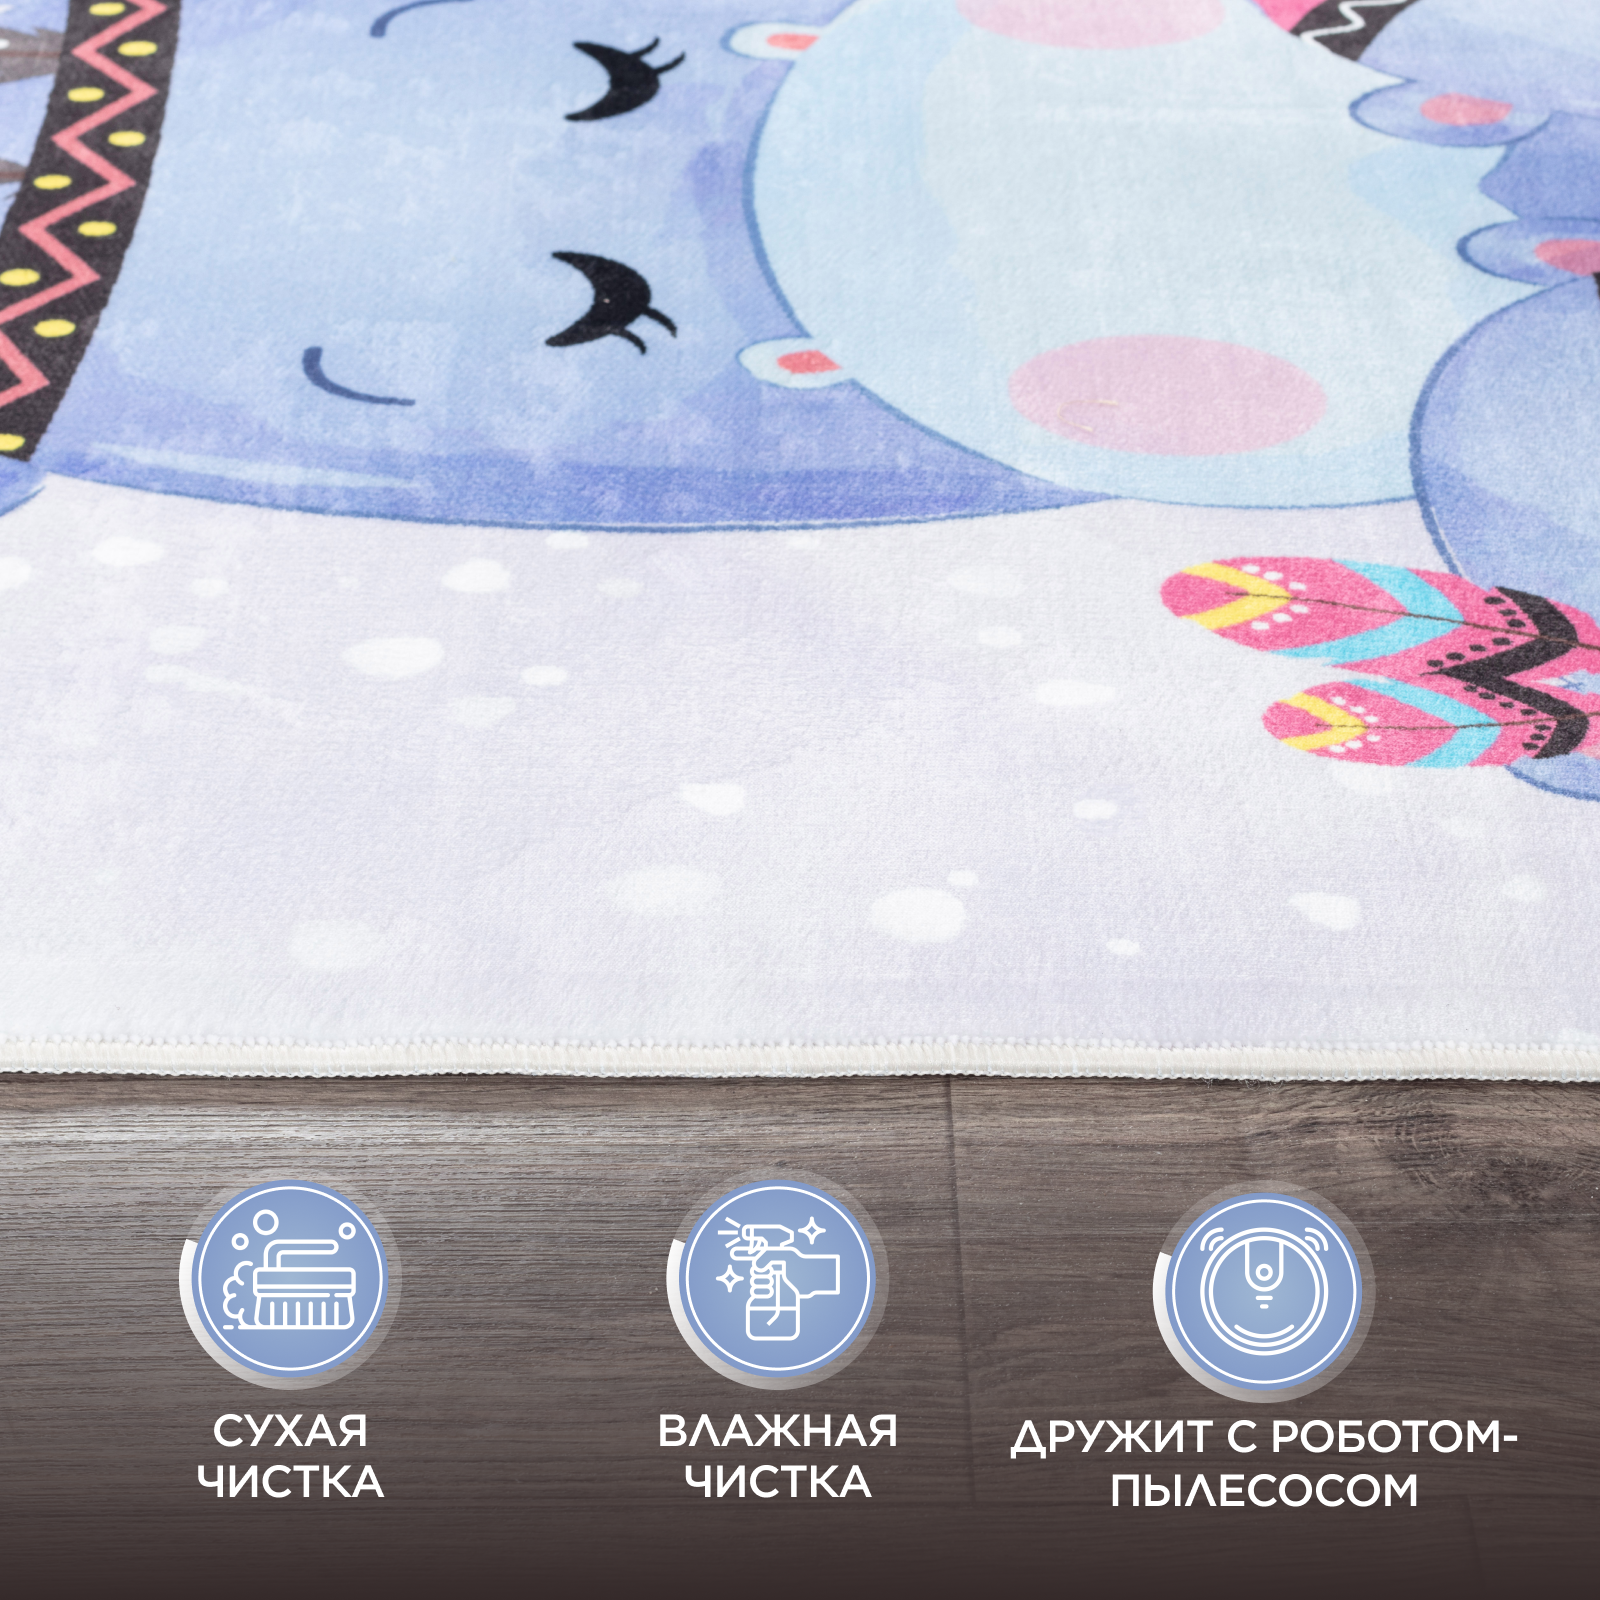 Ковер комнатный детский KOVRIKANA голубой сиреневый белый бегемот 120см на 175см - фото 6